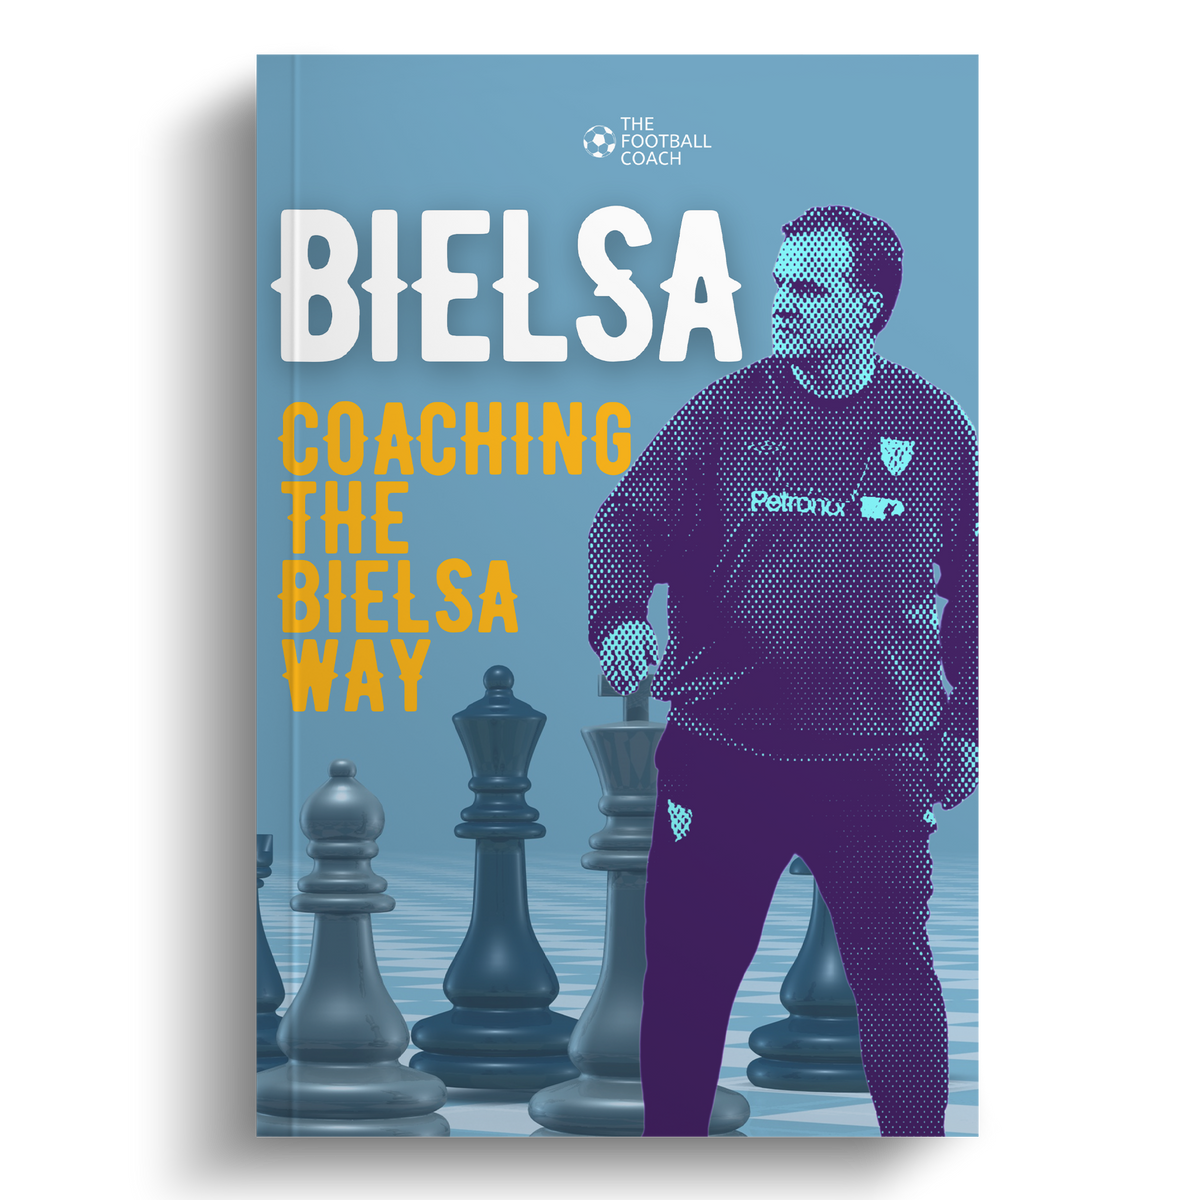 Bielsa- Coaching The Bielsa Way